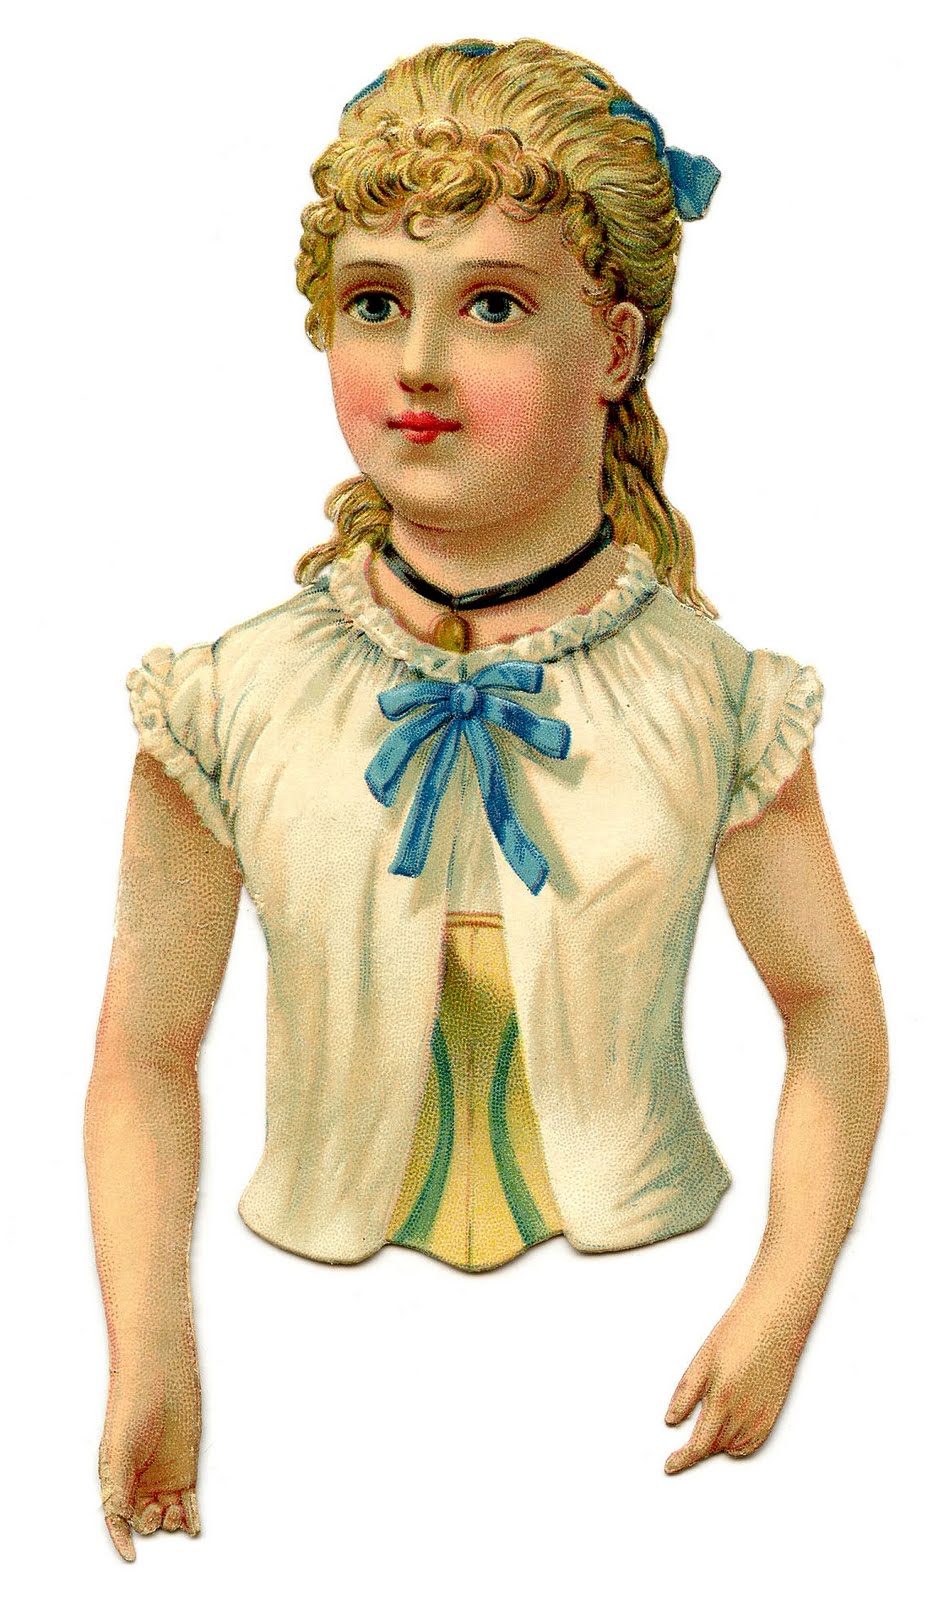 Vintage Clip Art - Pretty Victorian Scrap Girl - The Graphics Fairy